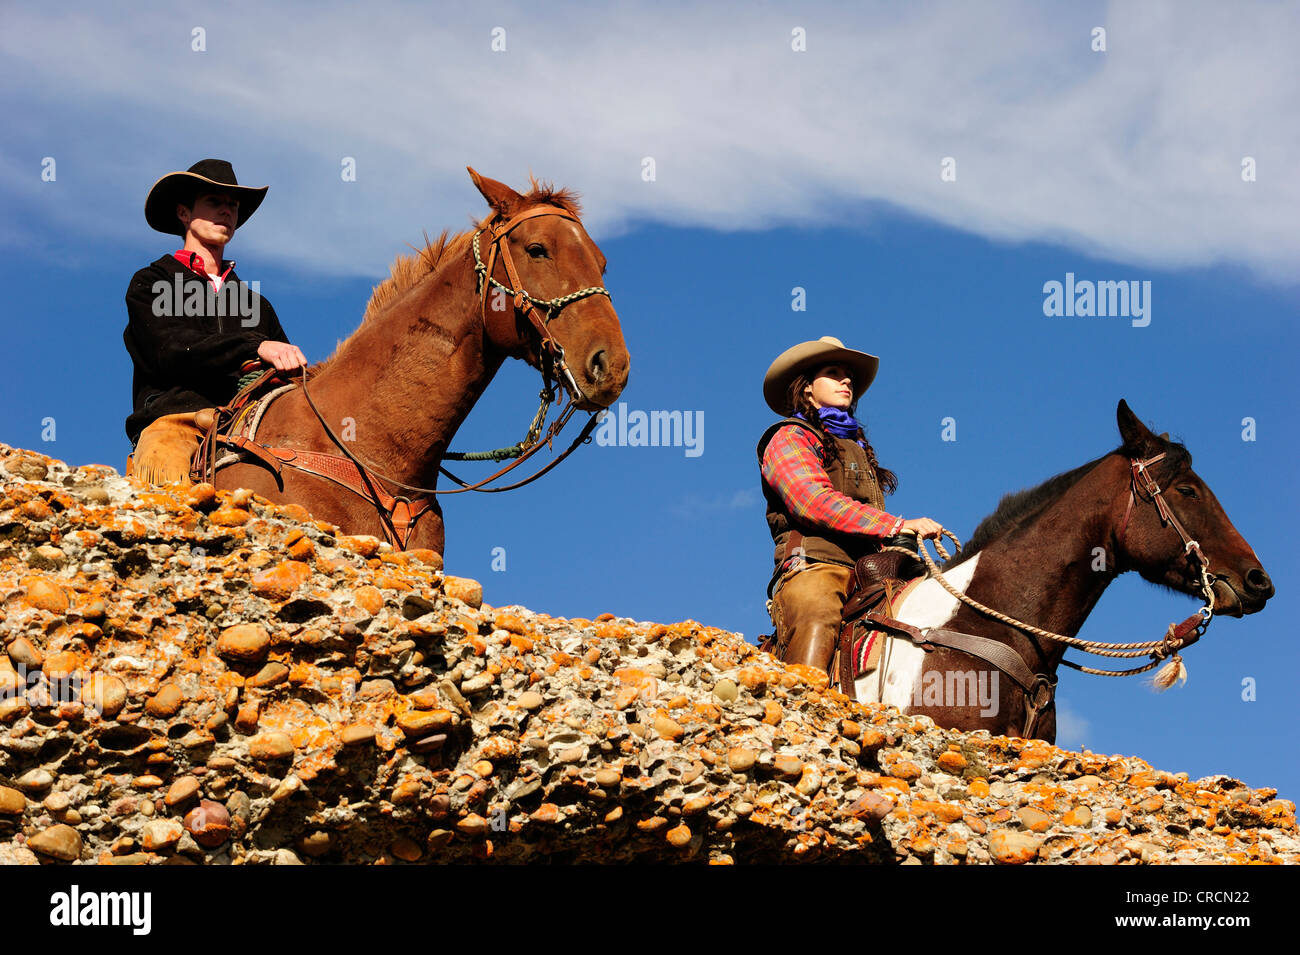 Cowboy und Cowgirl auf Pferde, Blick in die Ferne, Saskatchewan, Kanada, Nordamerika Stockfoto